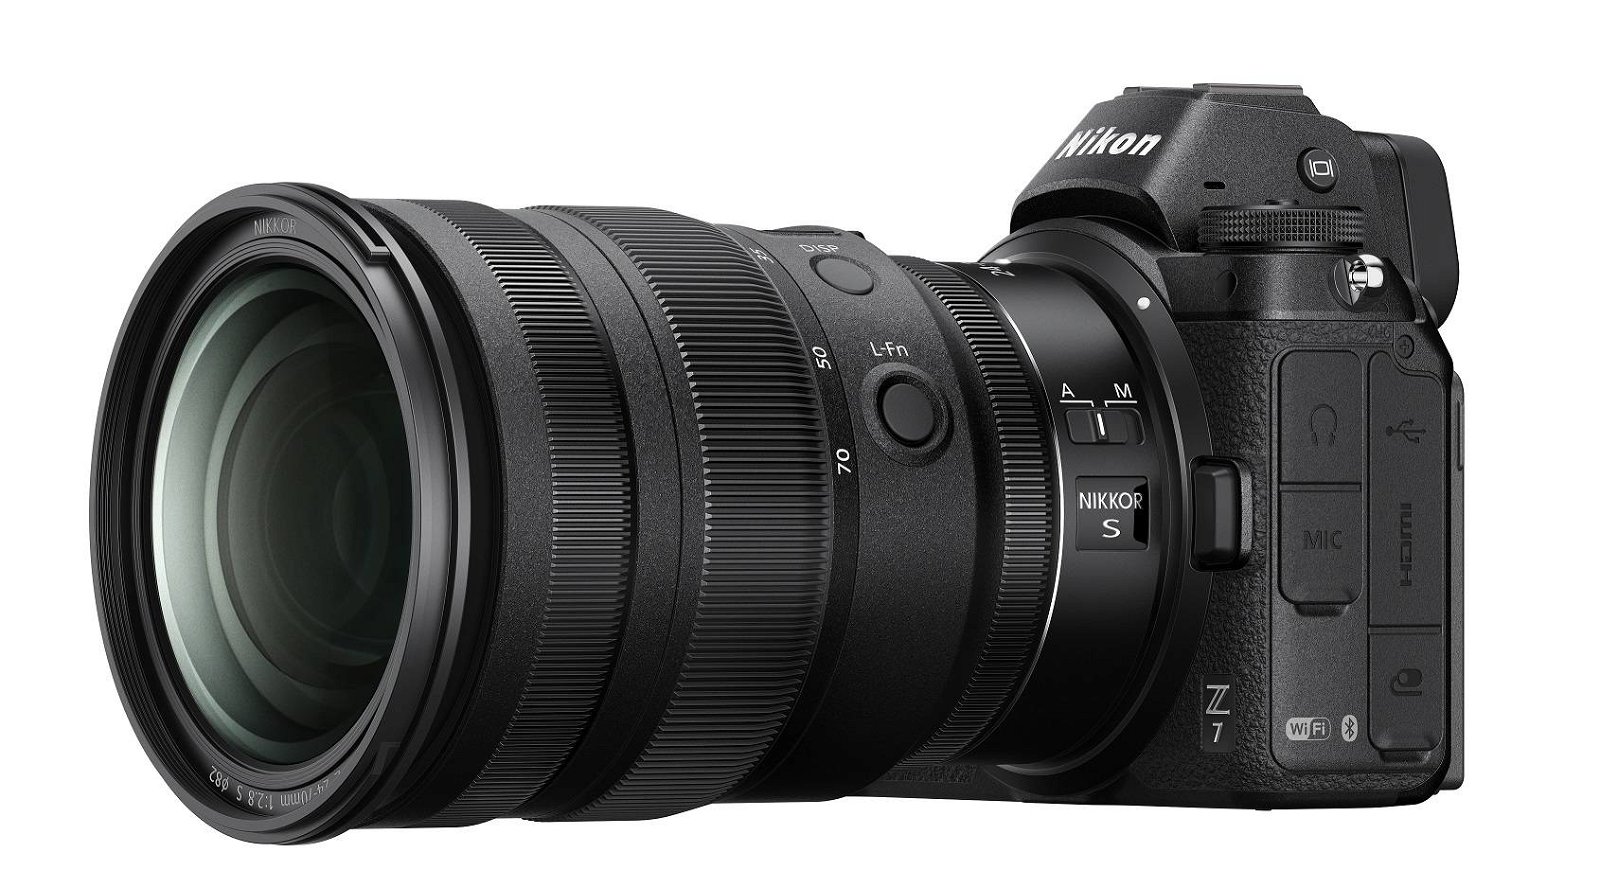 Immagine di Nikon, nuovo obiettivo Nikkor Z 24-70 f2.8 S per Nikon Z6 e Z7